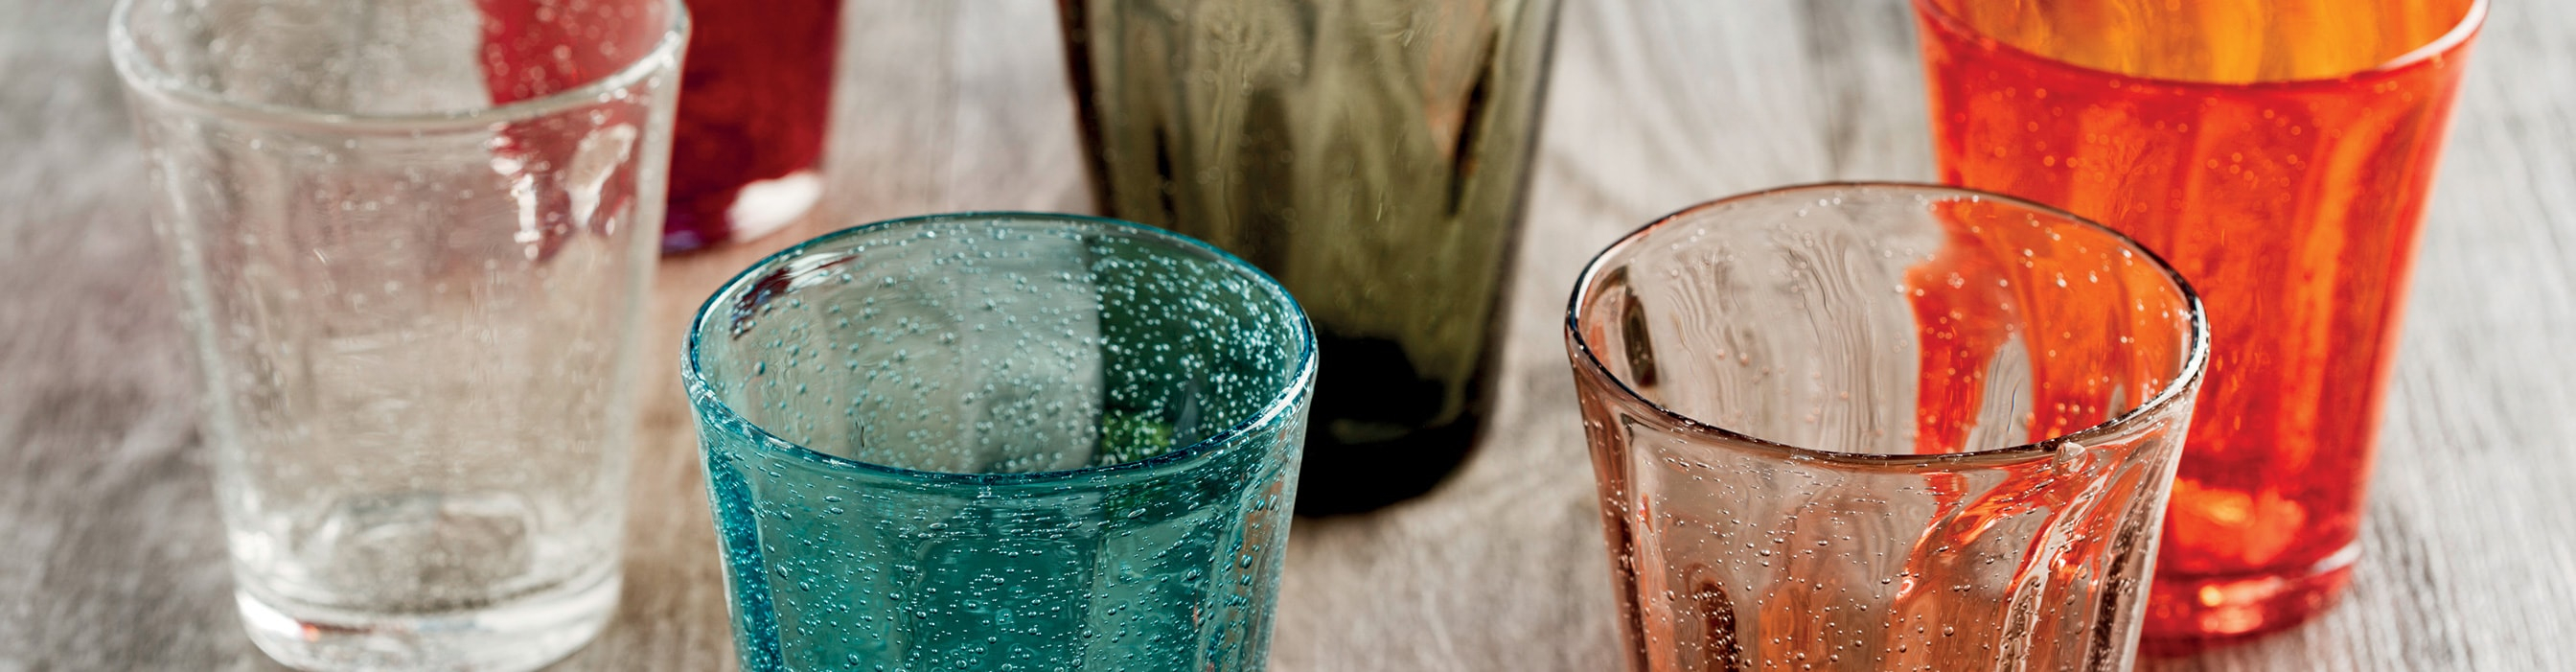 Bicchieri per acqua e vino per Ristoranti, Alberghi, Bar - Tognana  Professional